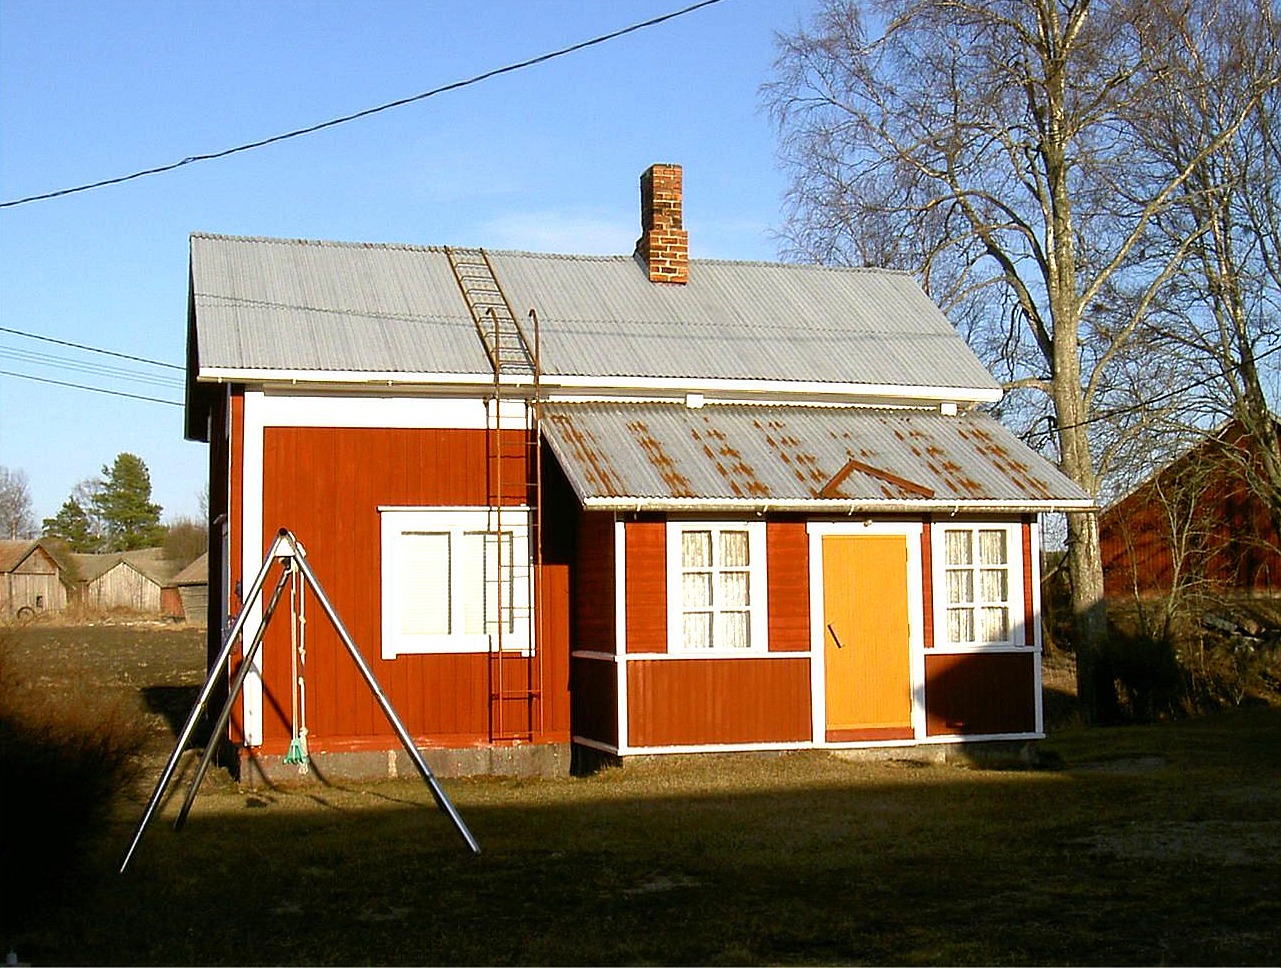 Efter att Hilma Sandlund hade sålt hemmanet åt familjen Norrvik flyttade hon till lillstugan och hon bodde ensam där under en lång tid. Hilma dog år 2000 och hon var den sista som bodde i lillstugan. I vänstra kanten syns hennes barndomshem där ”Skomakas”. Fotot från 2003.